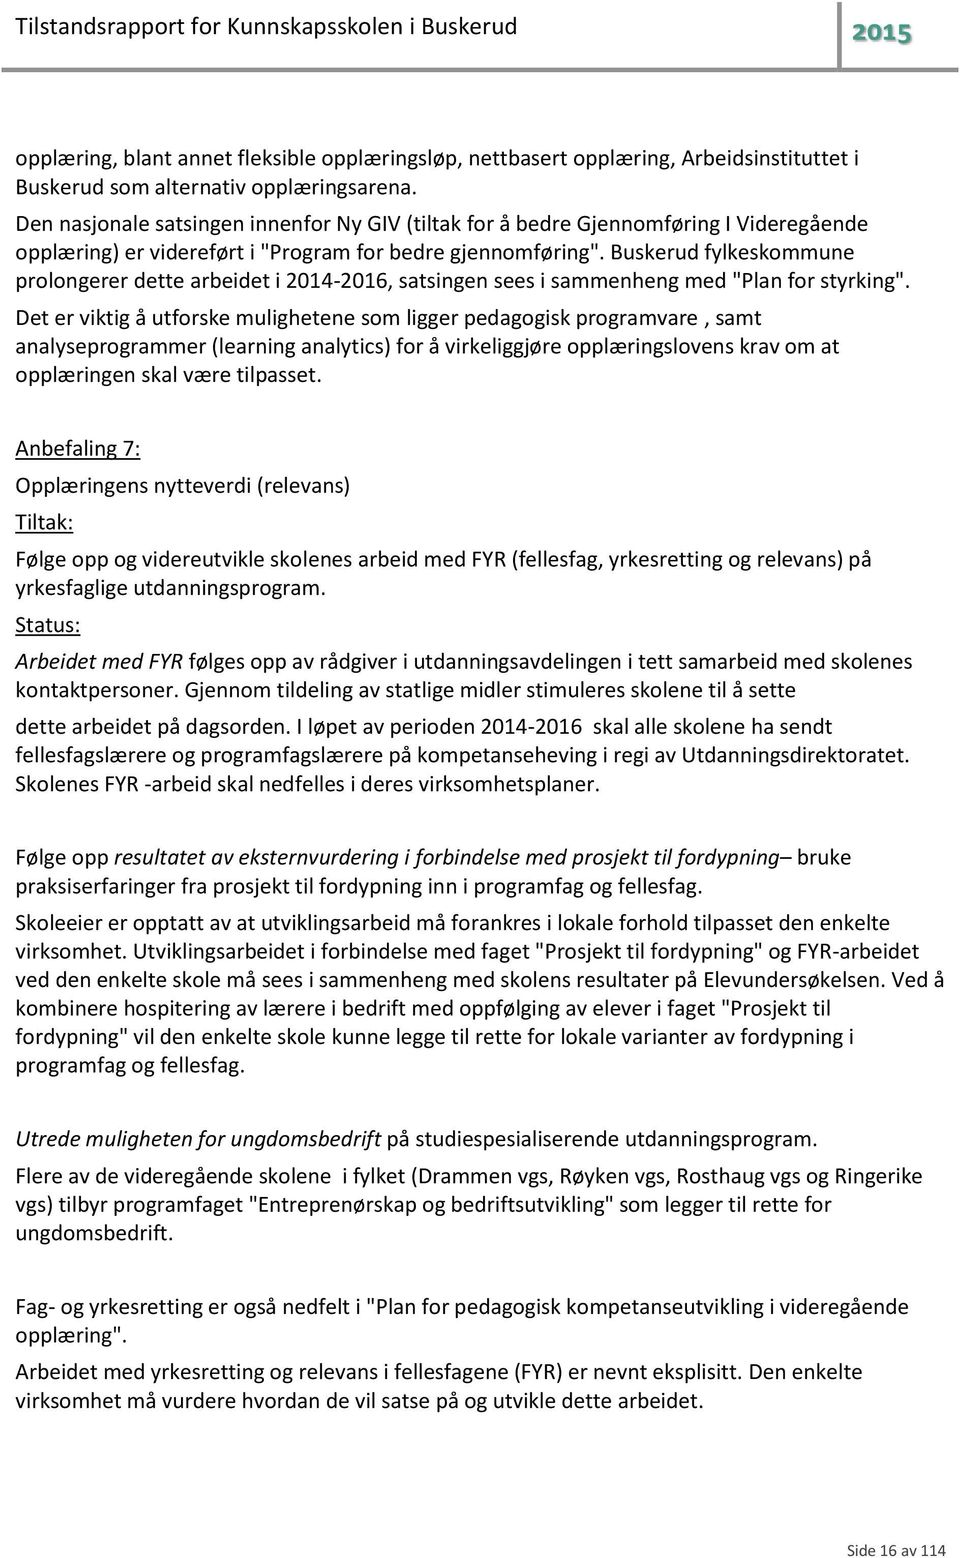 Buskerud fylkeskommune prolongerer dette arbeidet i 2014-2016, satsingen sees i sammenheng med "Plan for styrking".